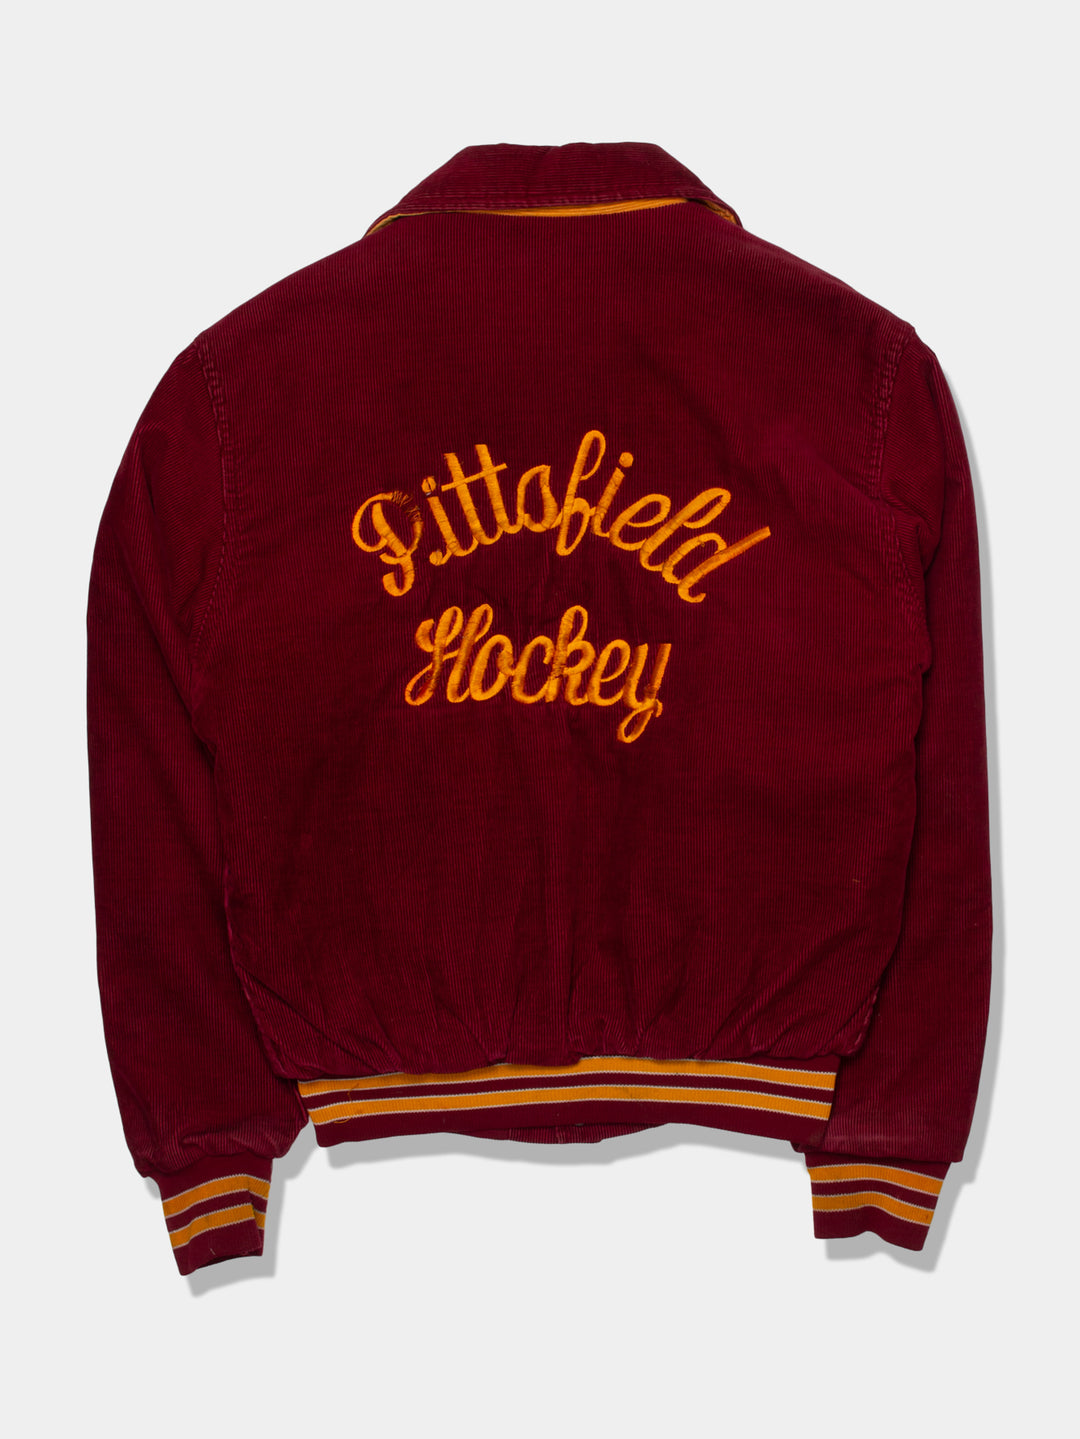 70s Corduroy Collegiate Varsity Jacket (XS)